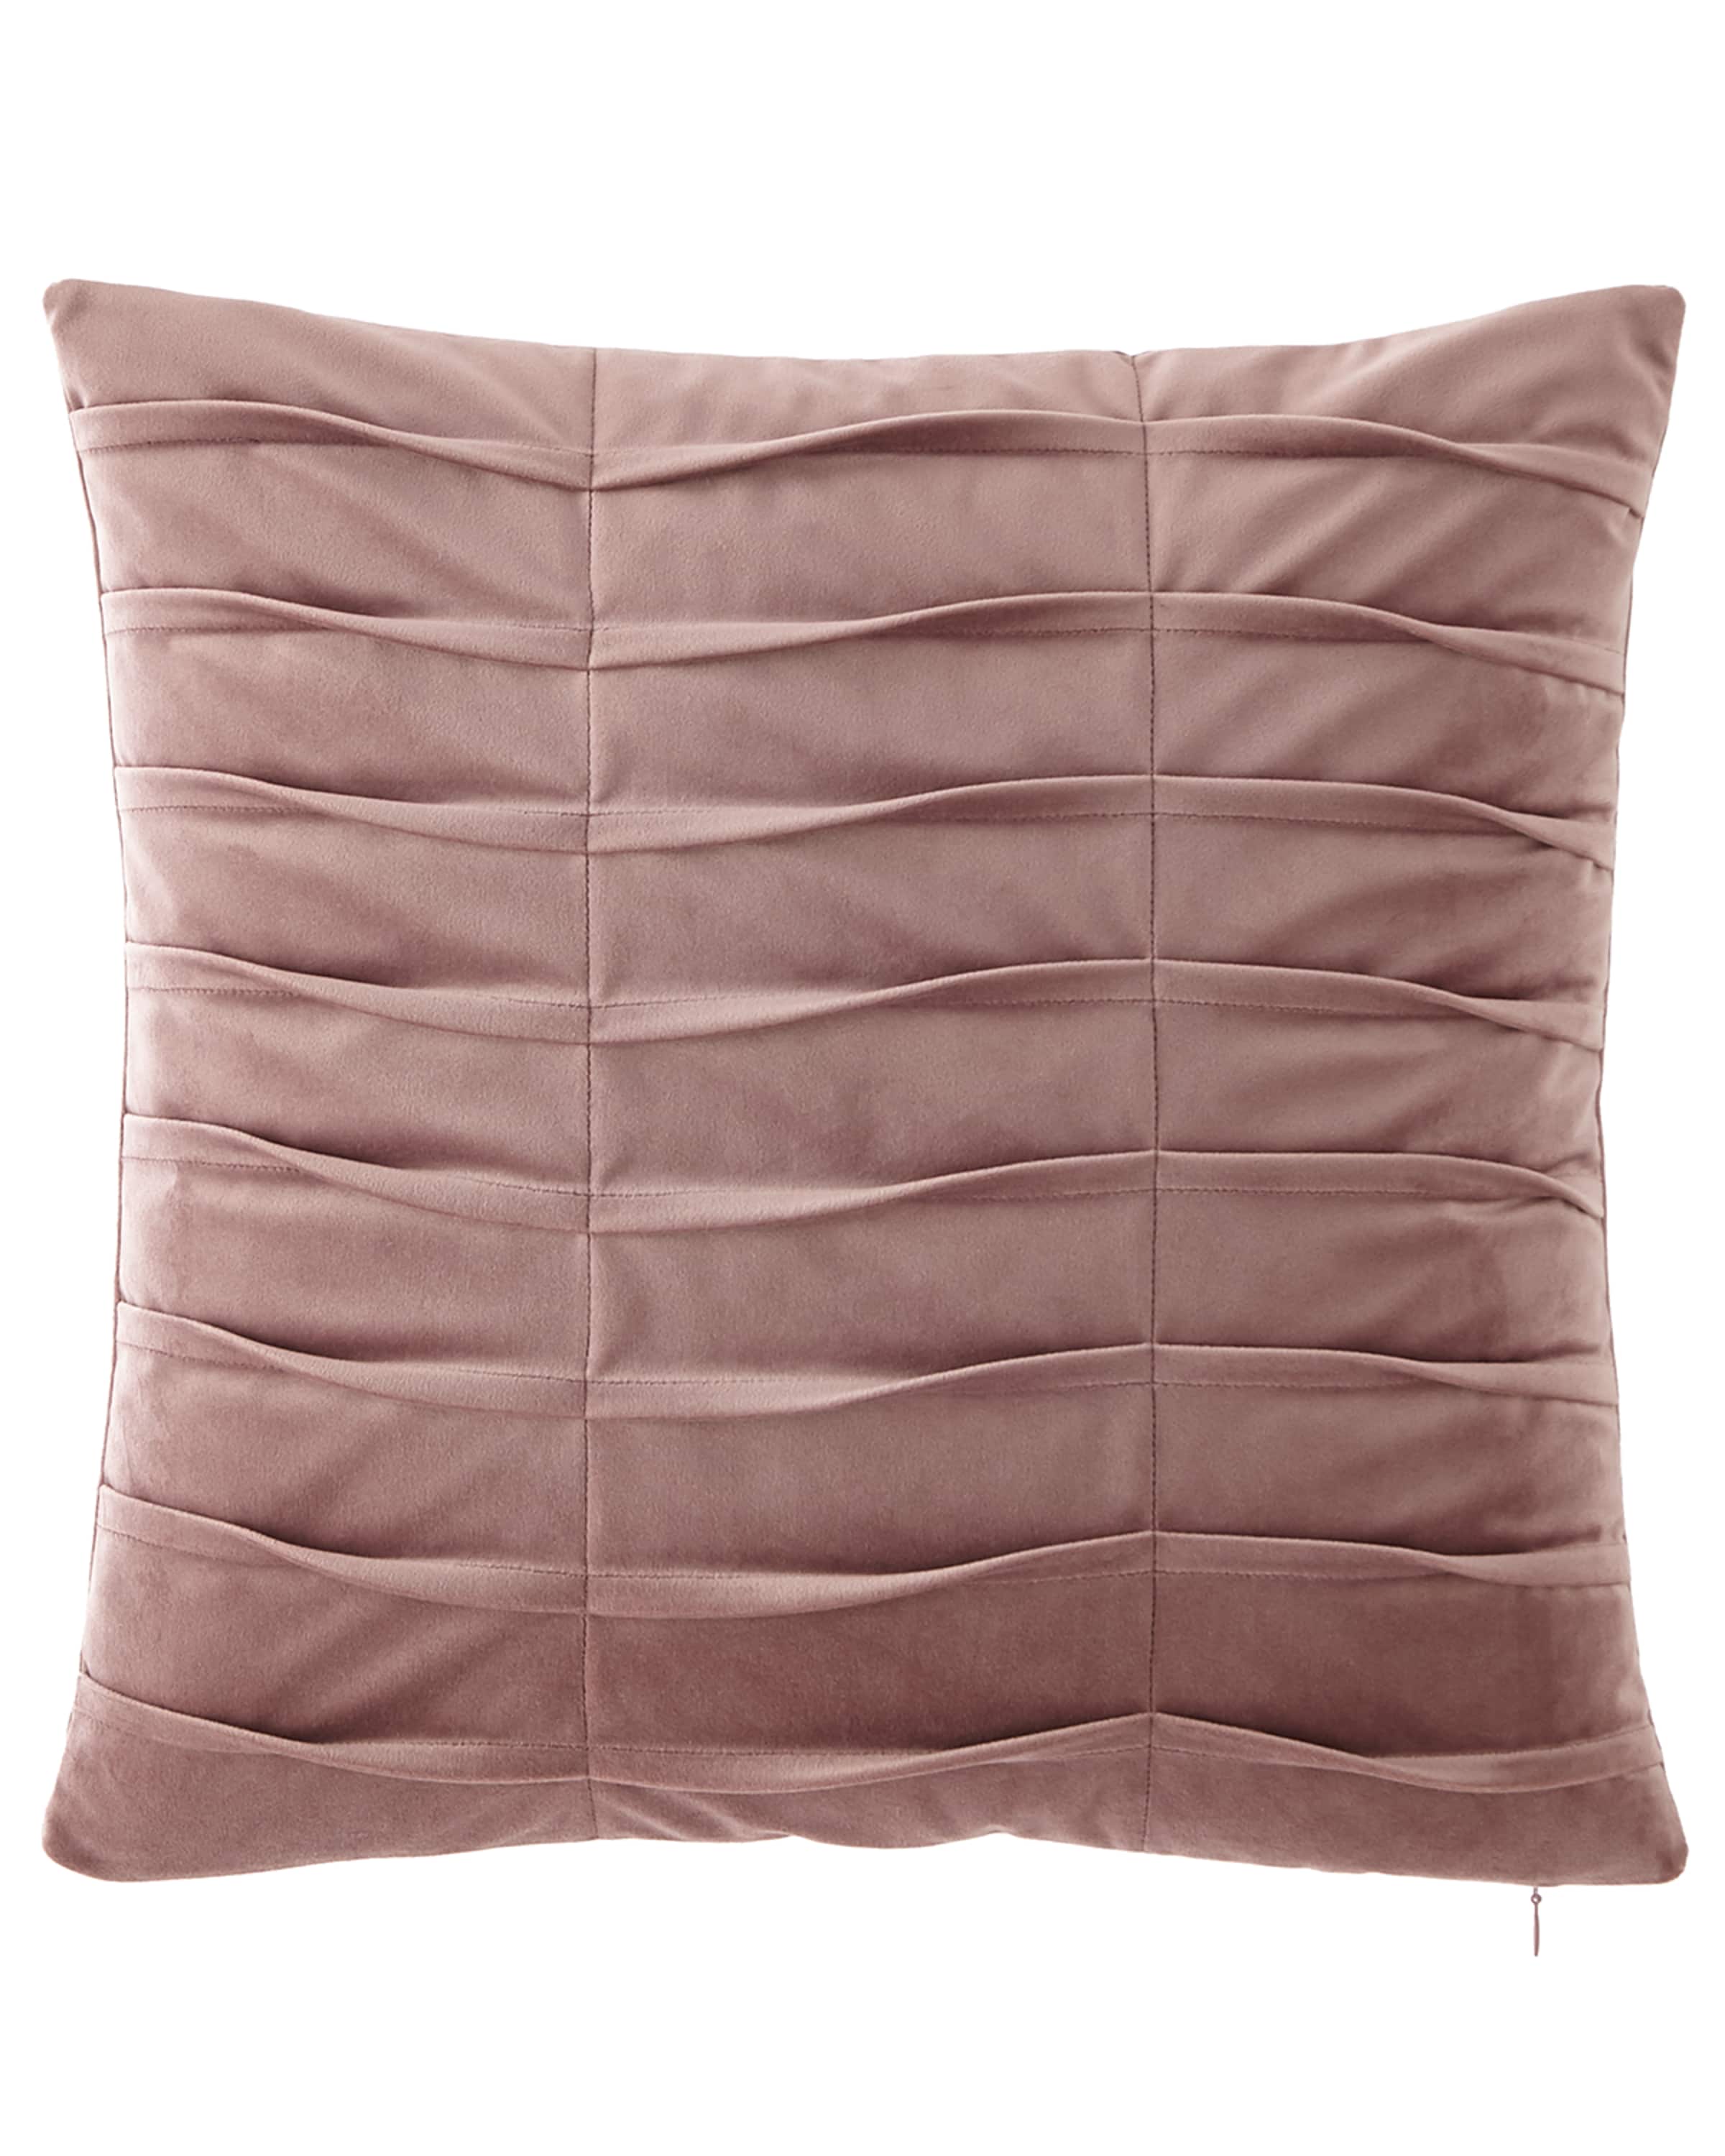 Sweet Dreams Lotus Pleated Velvet Boutique Pillow